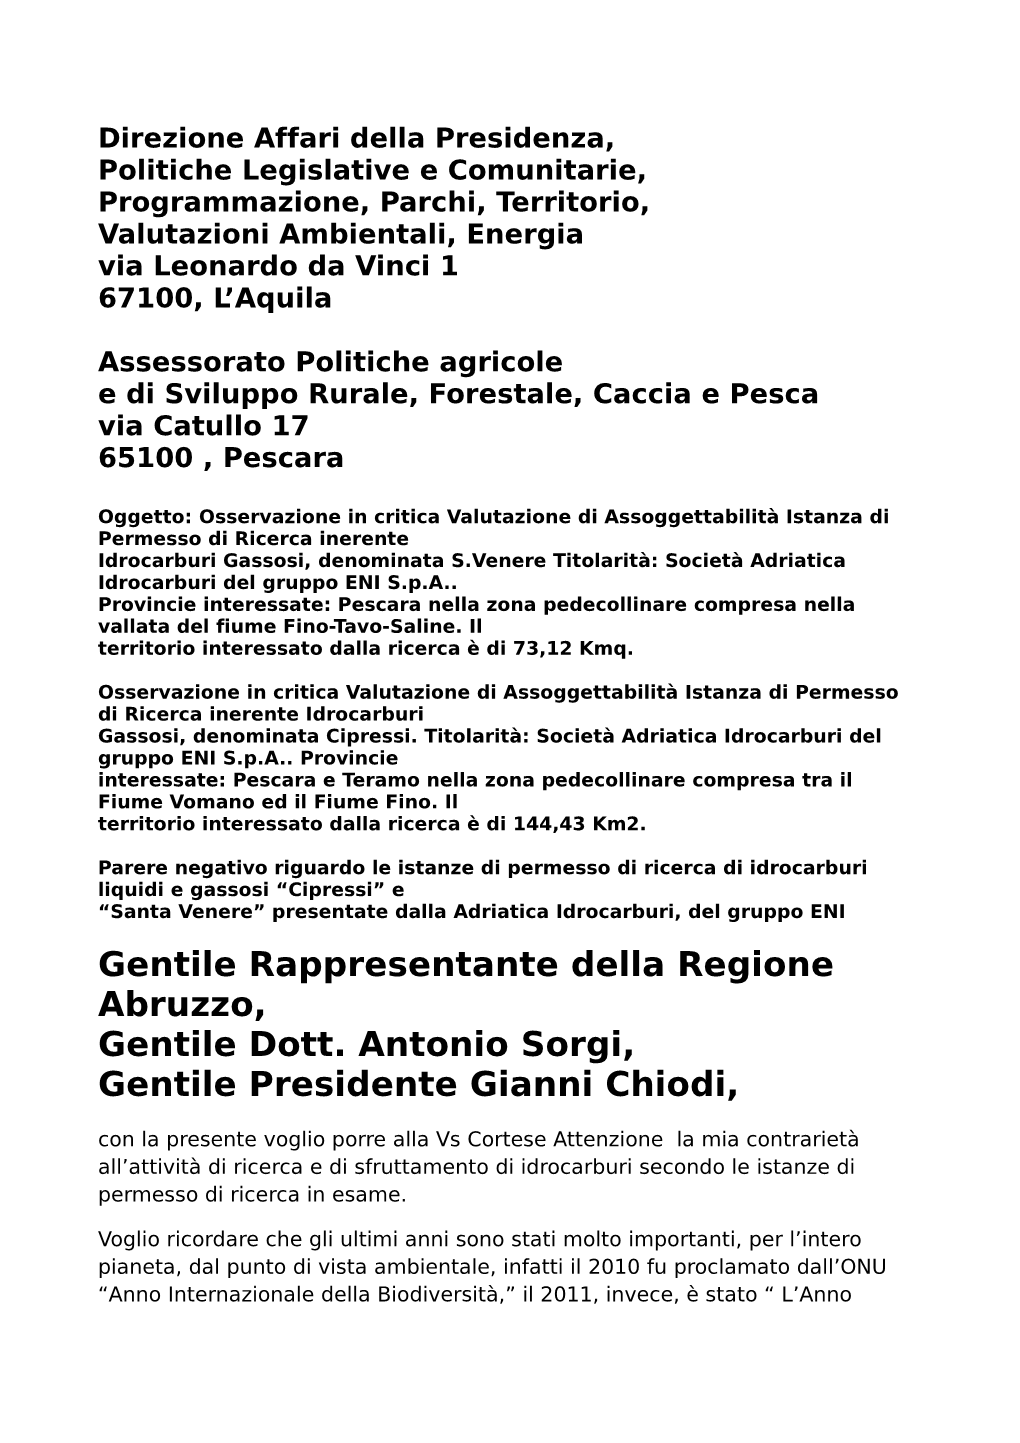 Gentile Rappresentante Della Regione Abruzzo, Gentile Dott. Antonio Sorgi, Gentile Presidente Gianni Chiodi